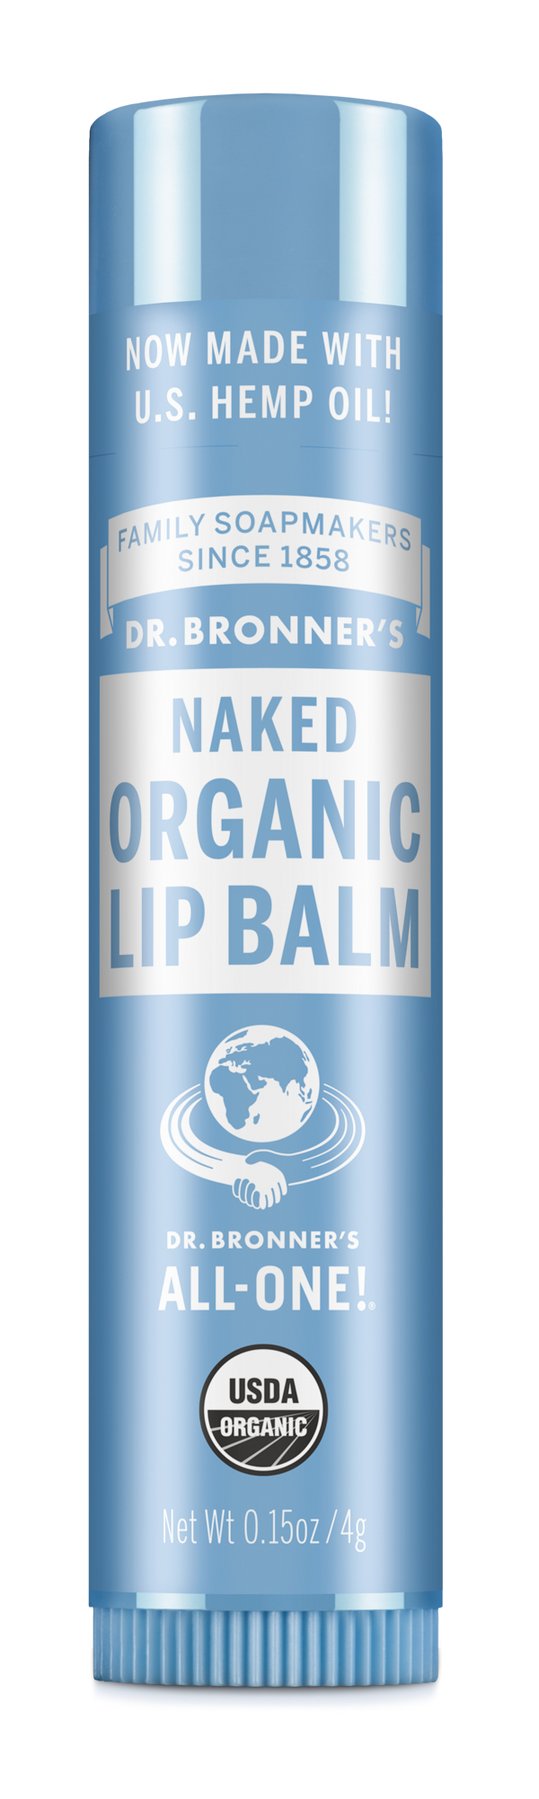 Dr. Bronner's Naked Organic Lip Balm 4g